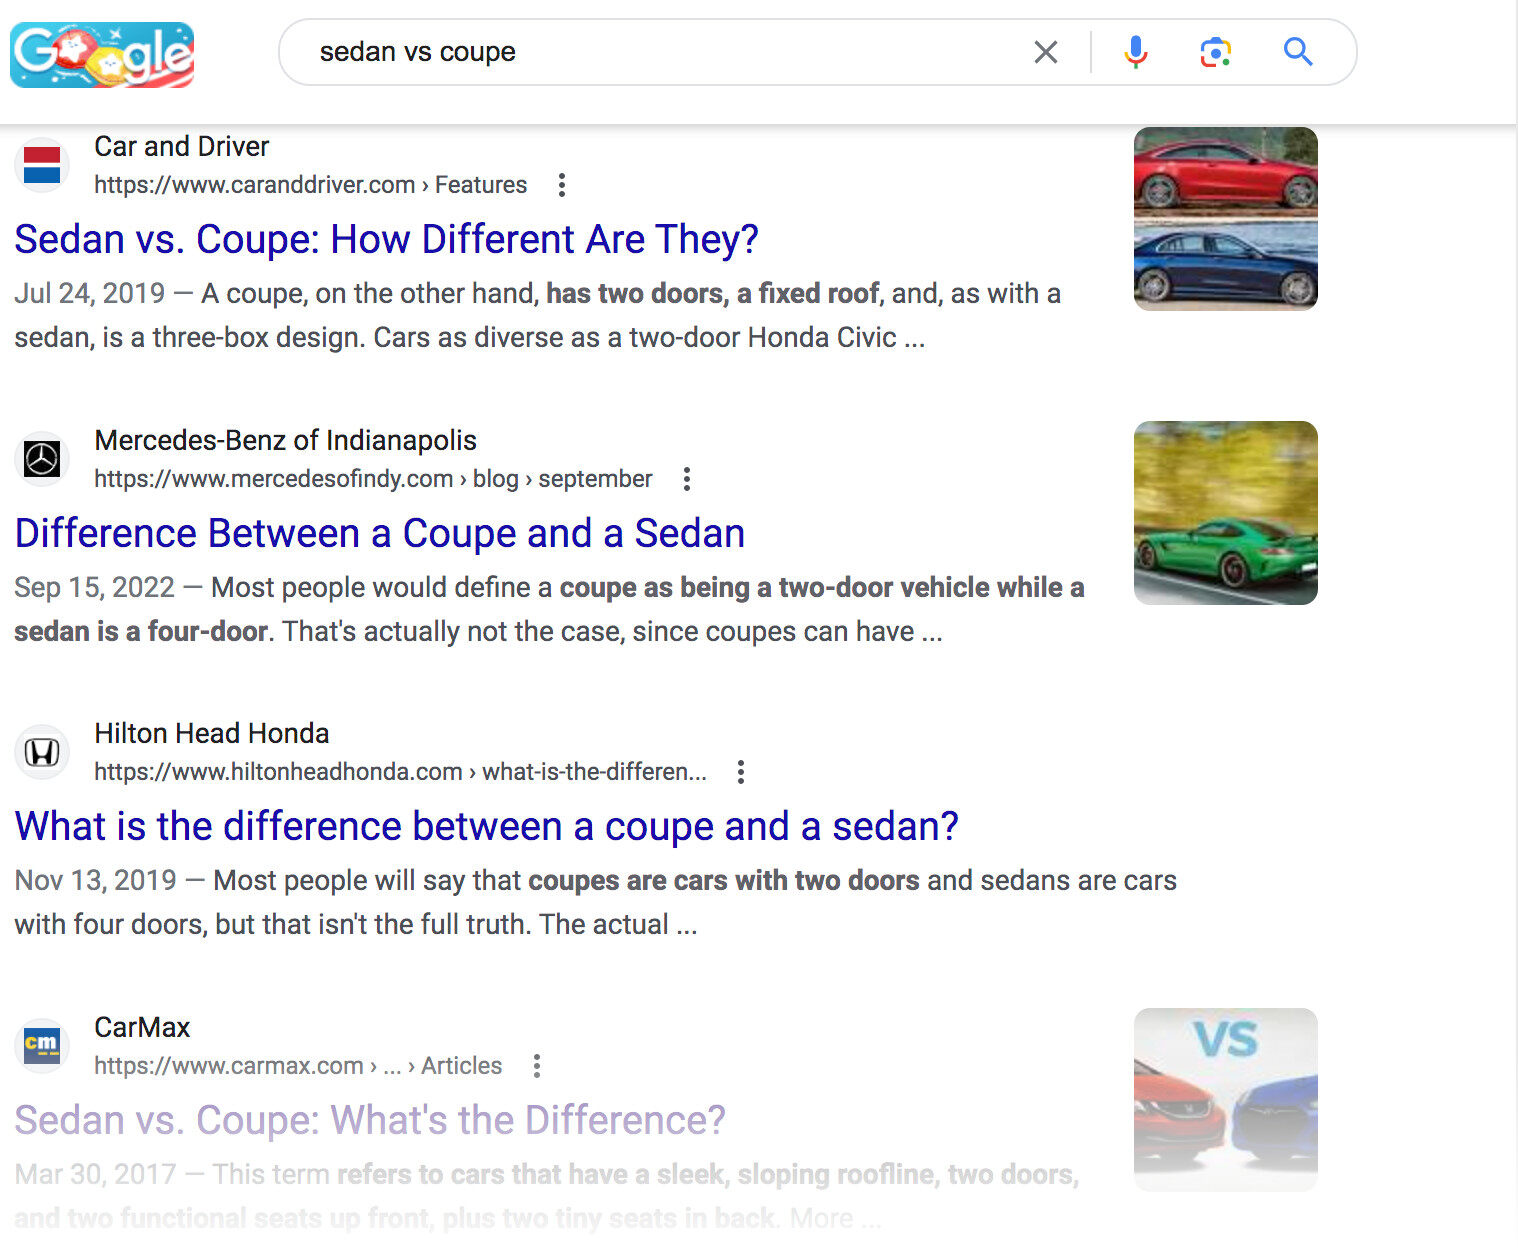 Google SERP for "sedan vs. coupe"